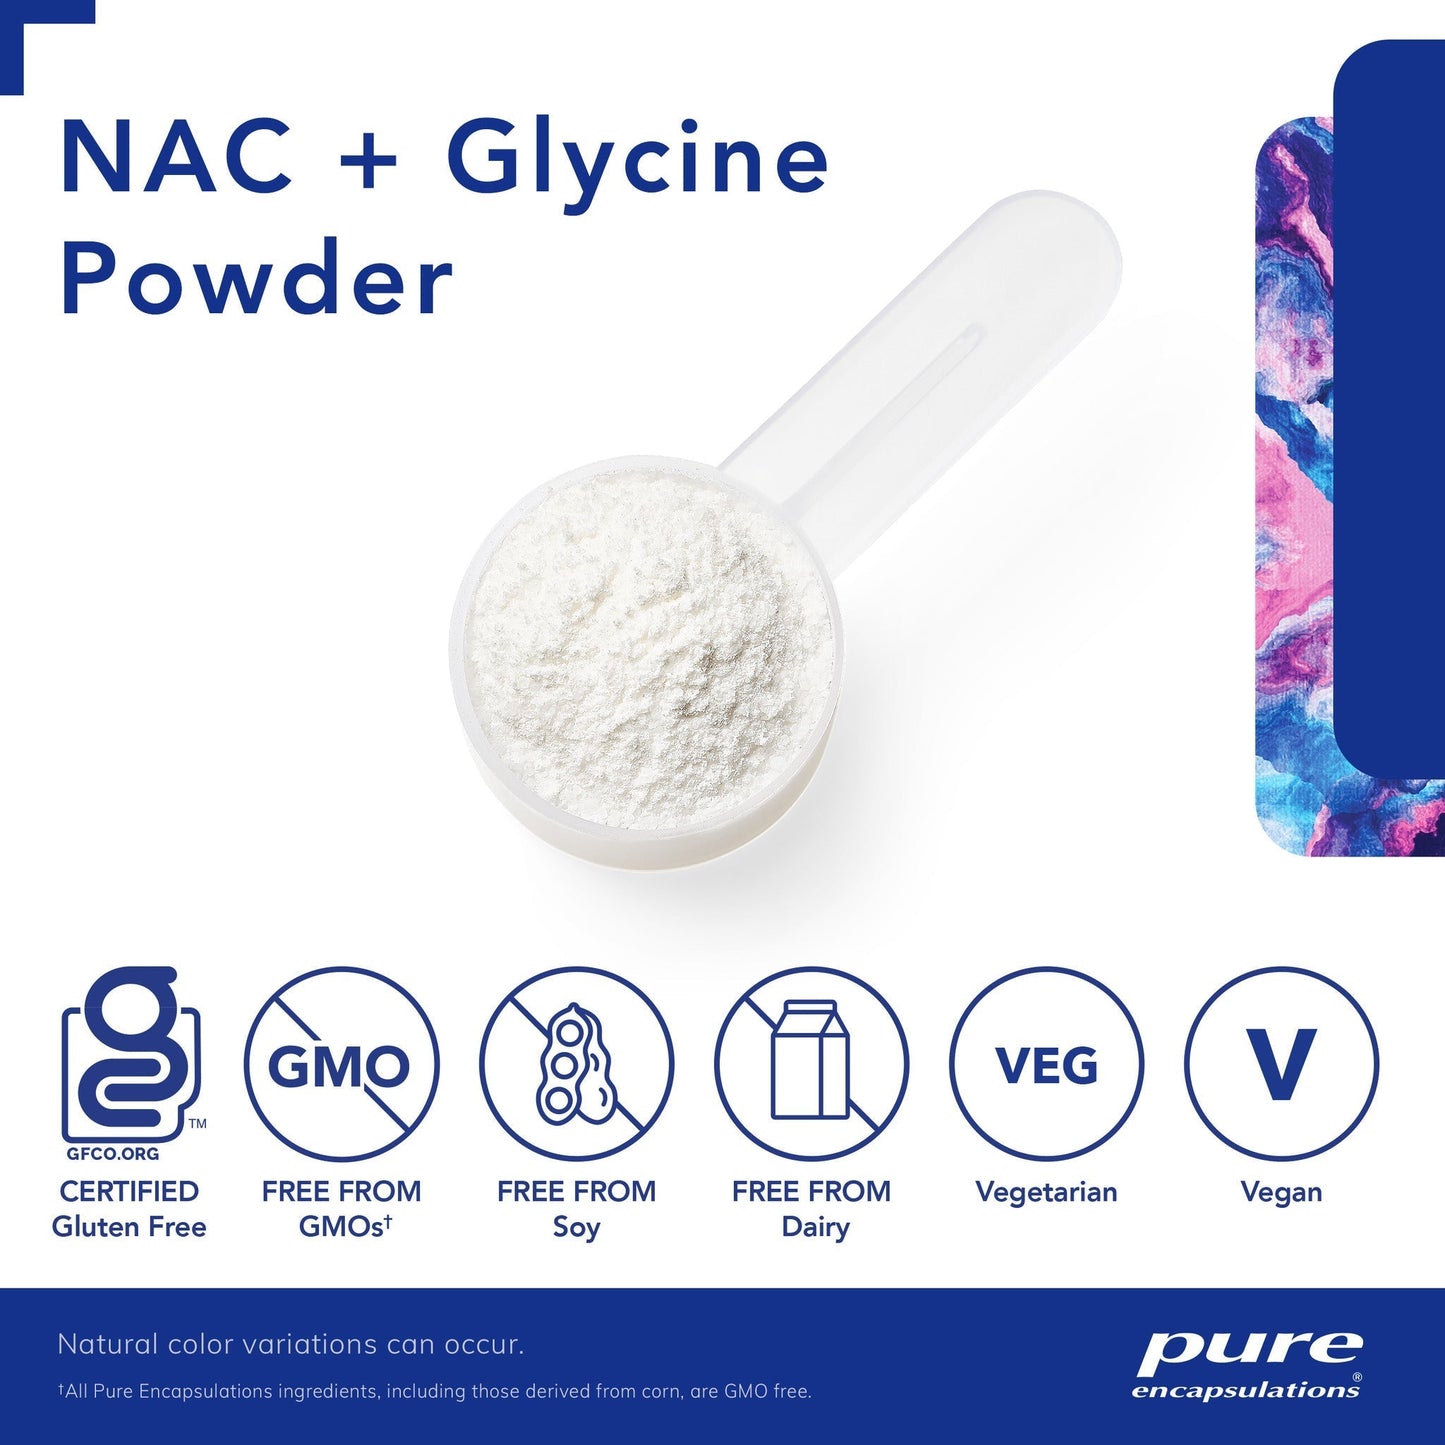 NAC+ Glycine Powder